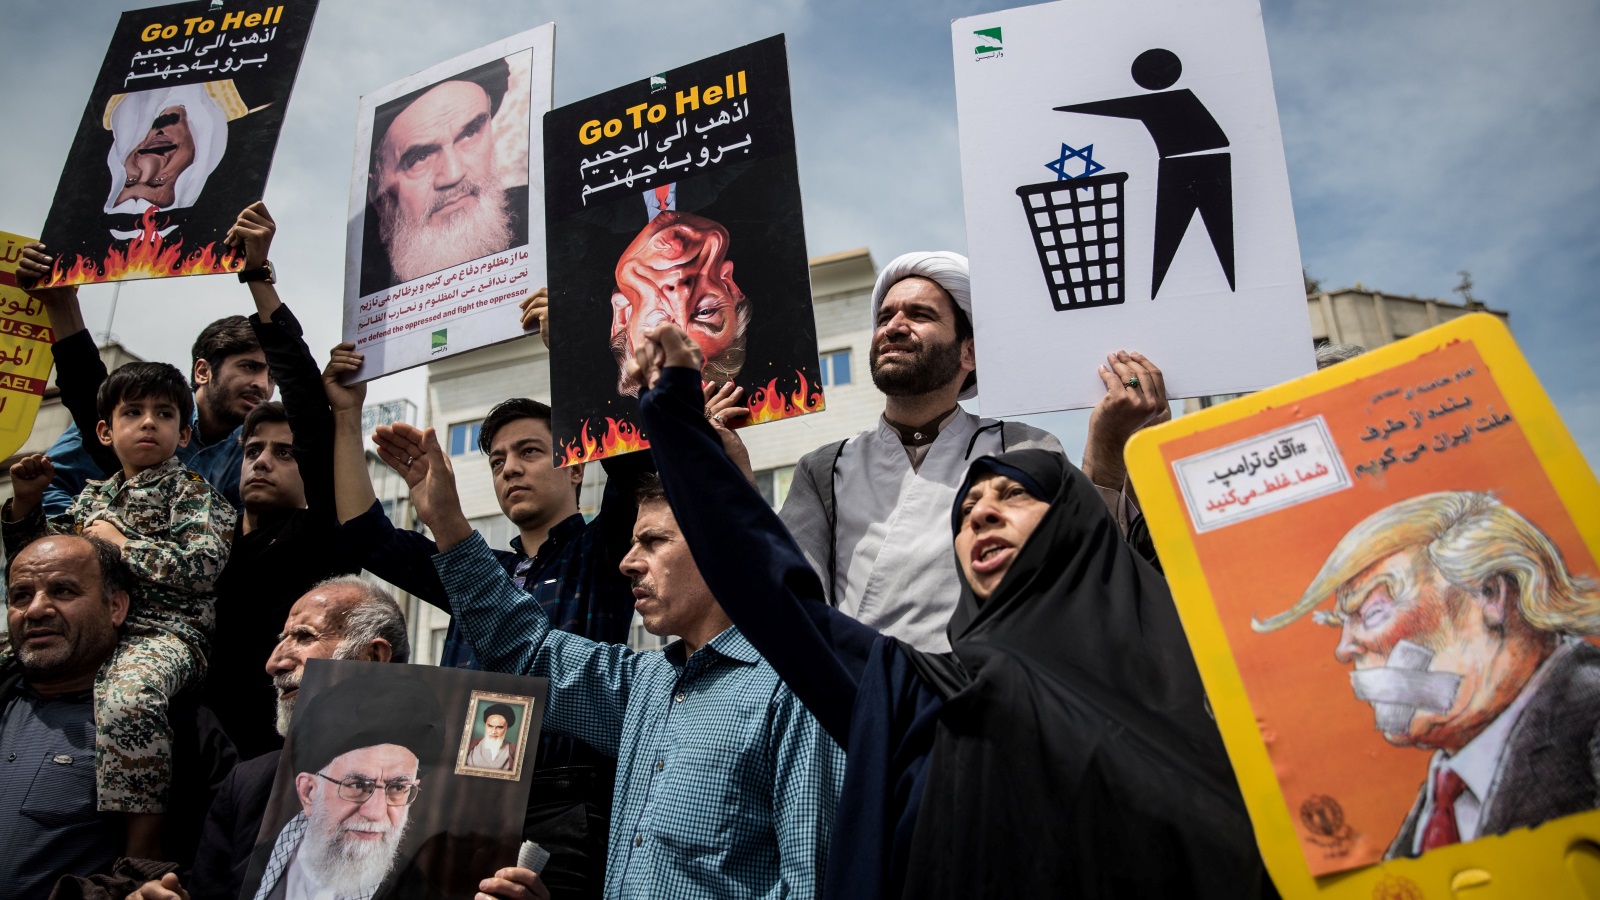 إيرانيون يحتجون على قرار ترامب الانسحاب من الاتفاق النووي مع طهران في مايو/أيار الماضي(رويترز)